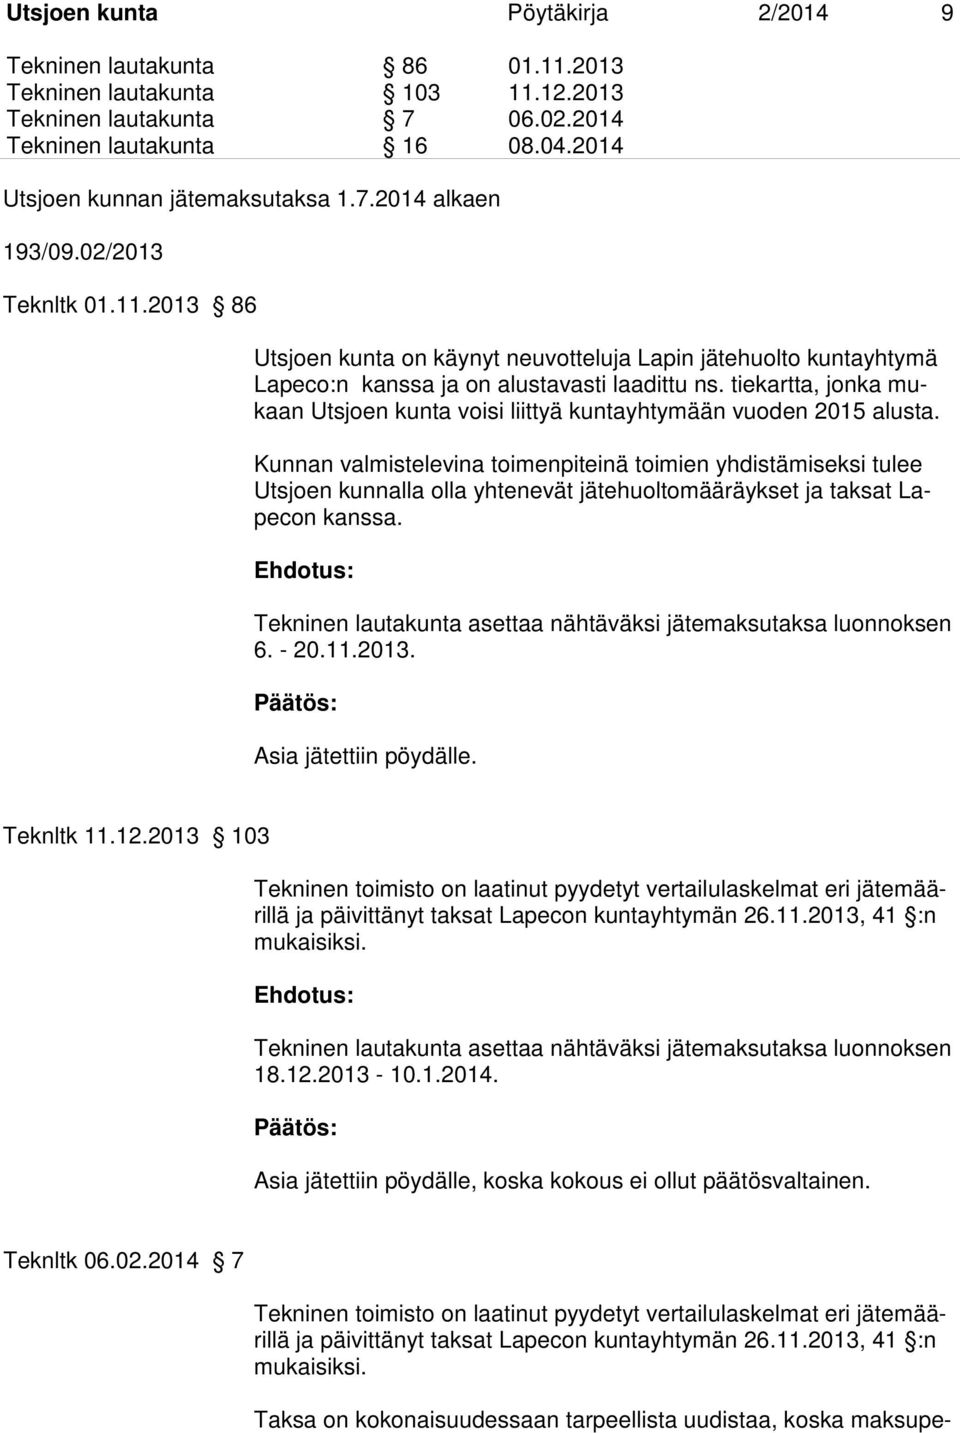 tiekartta, jonka mukaan Utsjoen kunta voisi liittyä kuntayhtymään vuoden 2015 alusta.